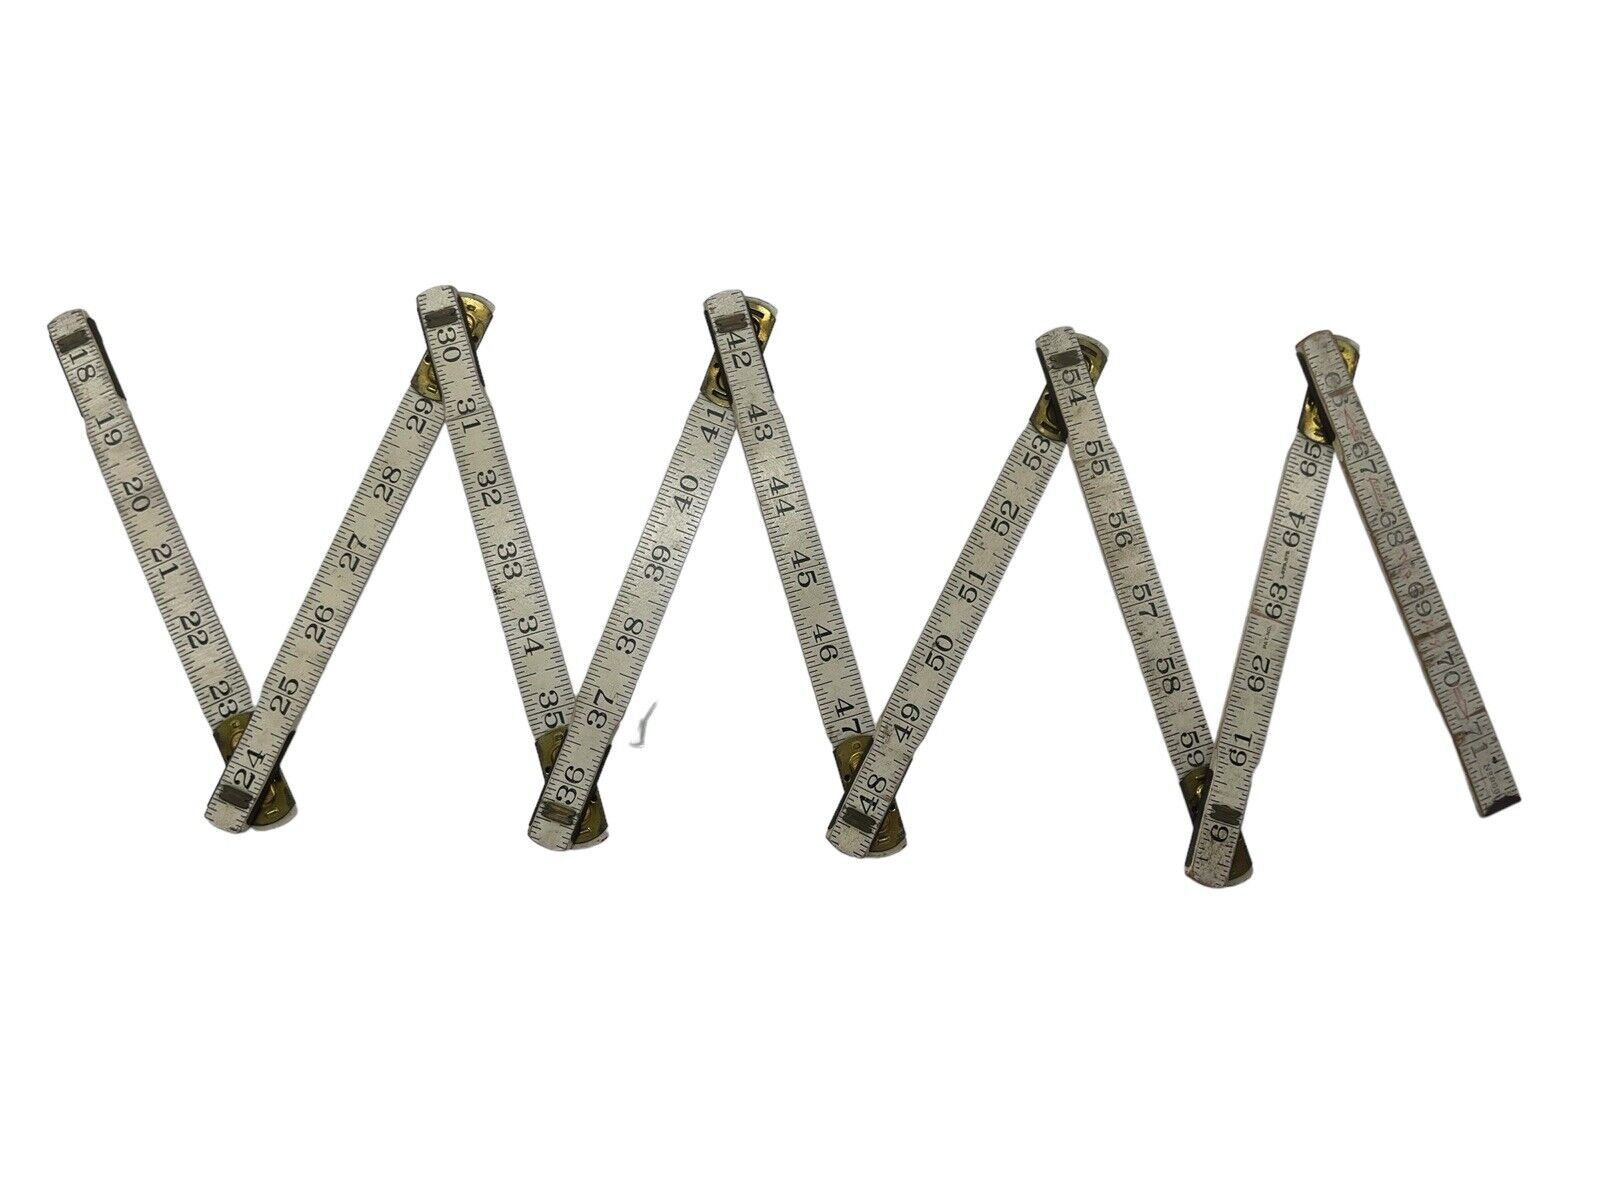 Vtg Wood 6’ Measuring Stick Lufkin 2 Way Folding Ruler NO966 Spring Joints 72”